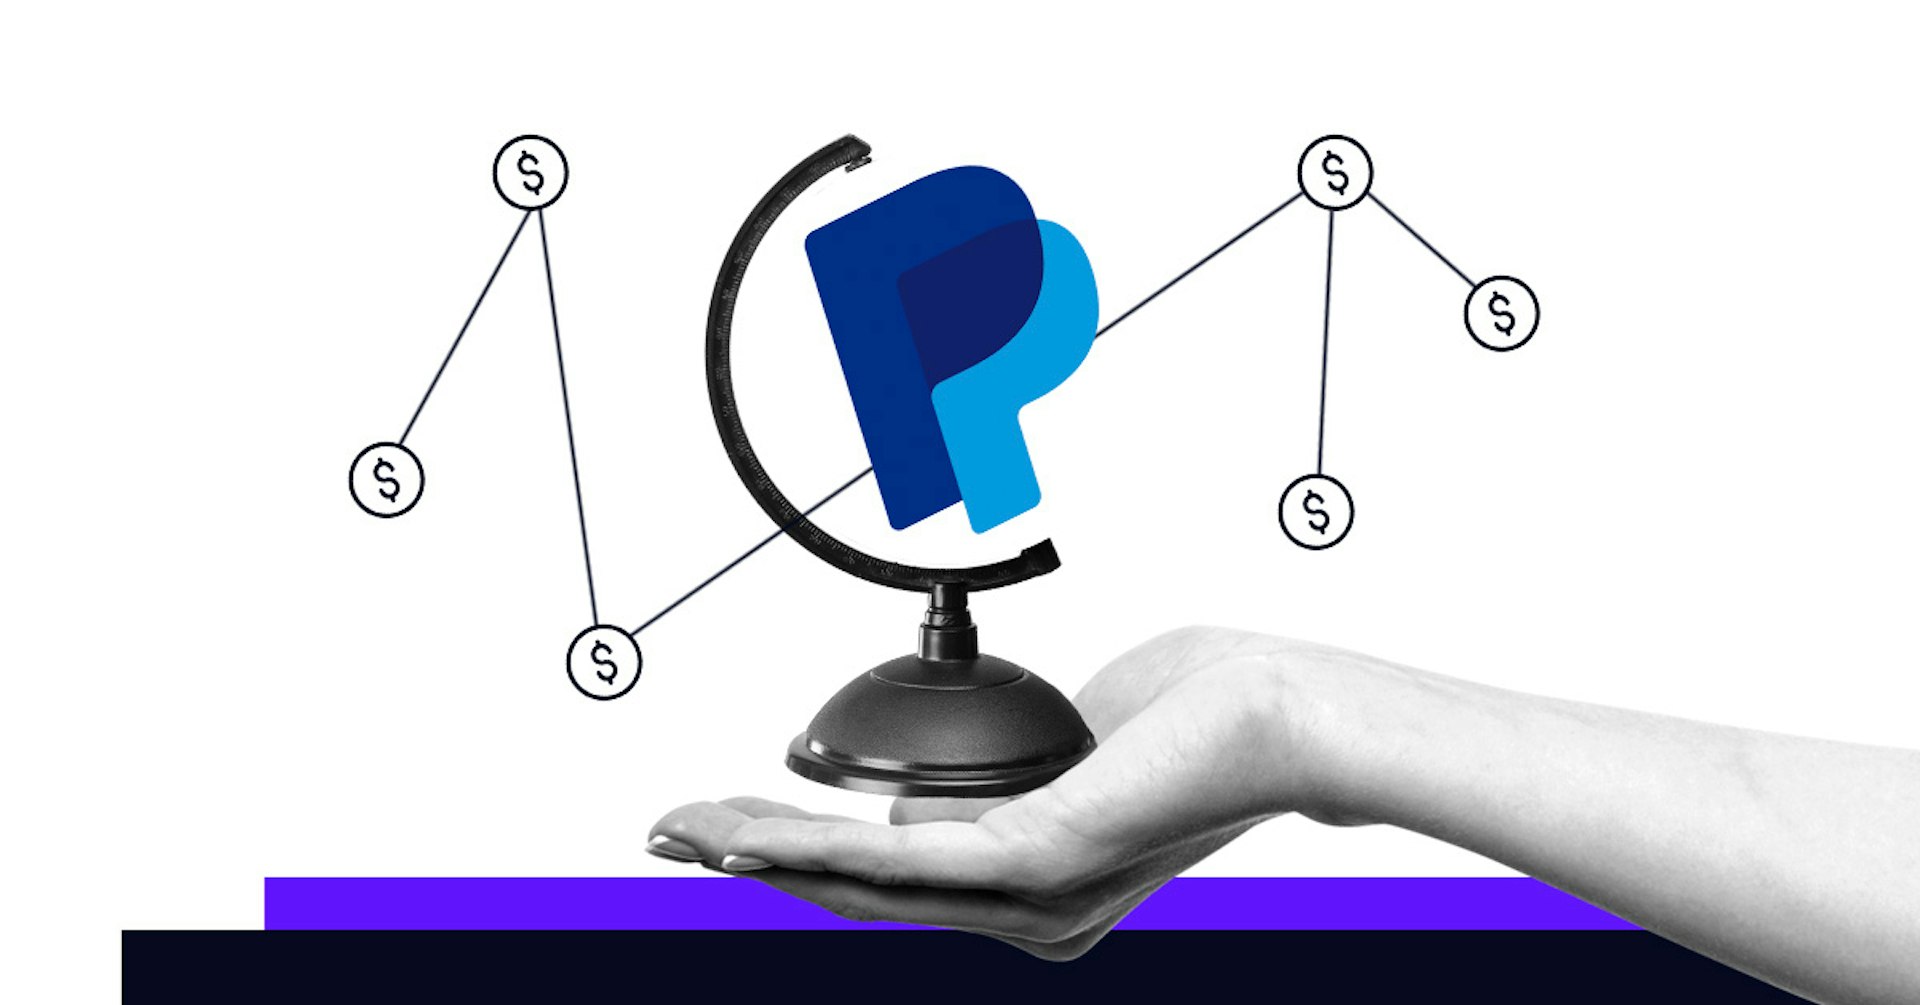 Descubre qué es PayPal y domina este monedero electrónico ¡Haz crecer tu negocio!